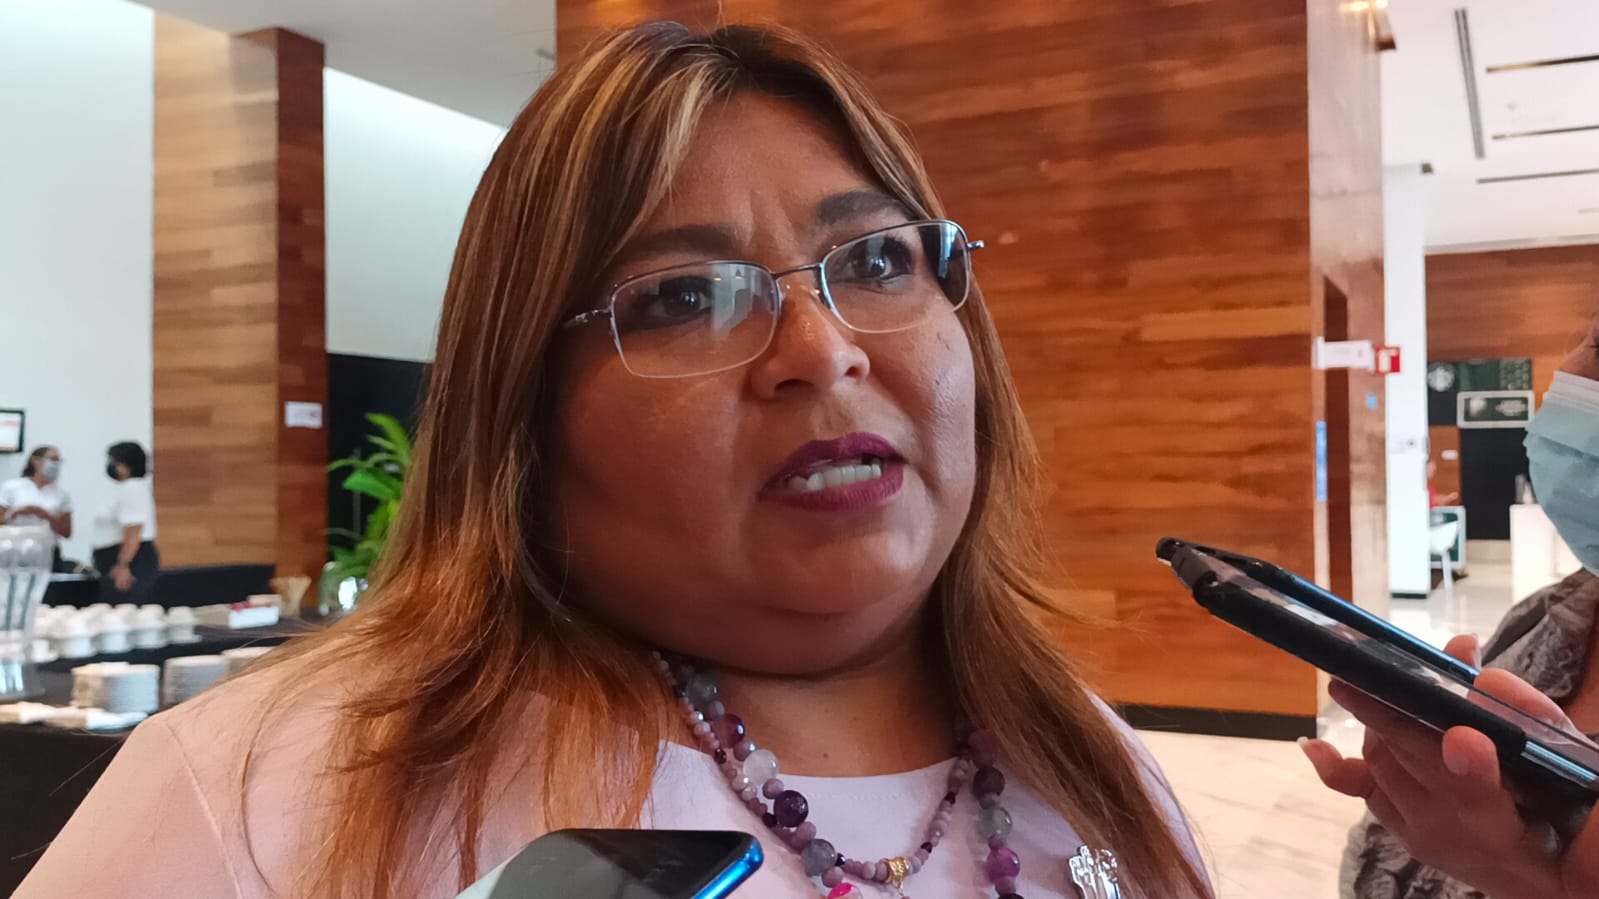 El refugio de mujeres violentadas del Ayuntamiento de Mérida recibirá pronto recursos para operar con normalidad